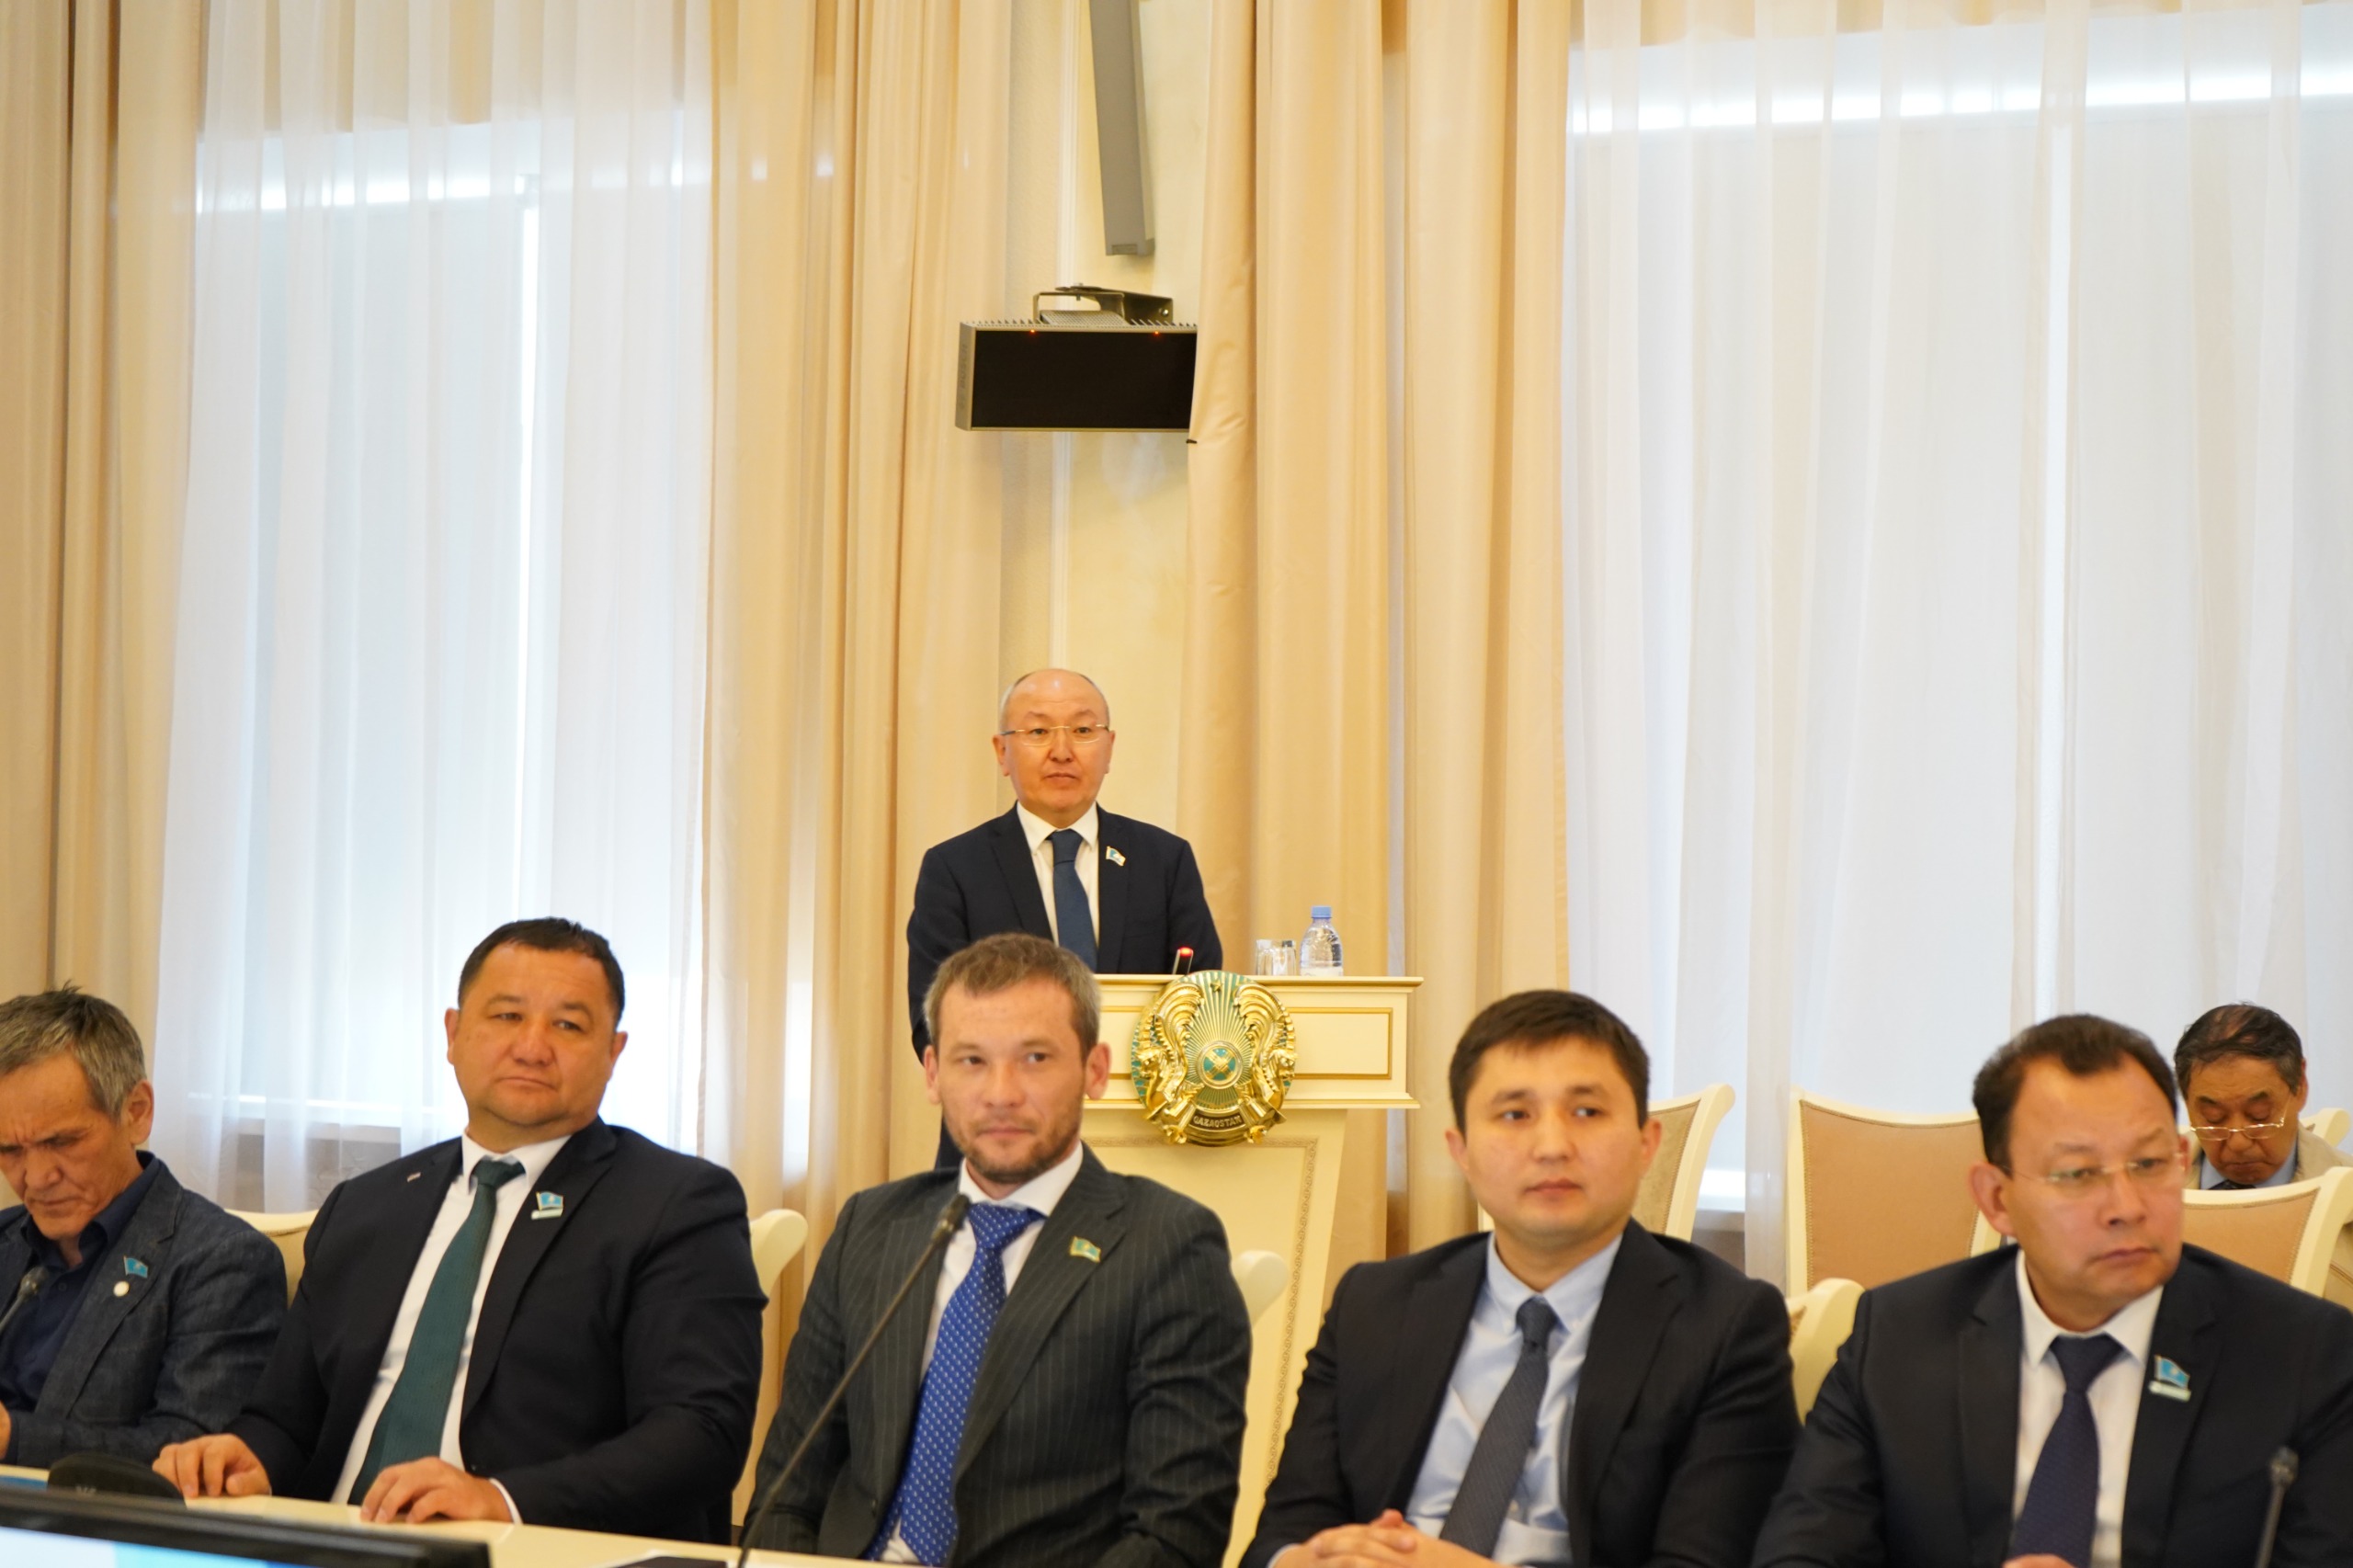 Состоялась очередная ХVIII сессия Карагандинского городского маслихата VIII созыва под председательством председателя Карагандинского городского маслихата А.Букенова.